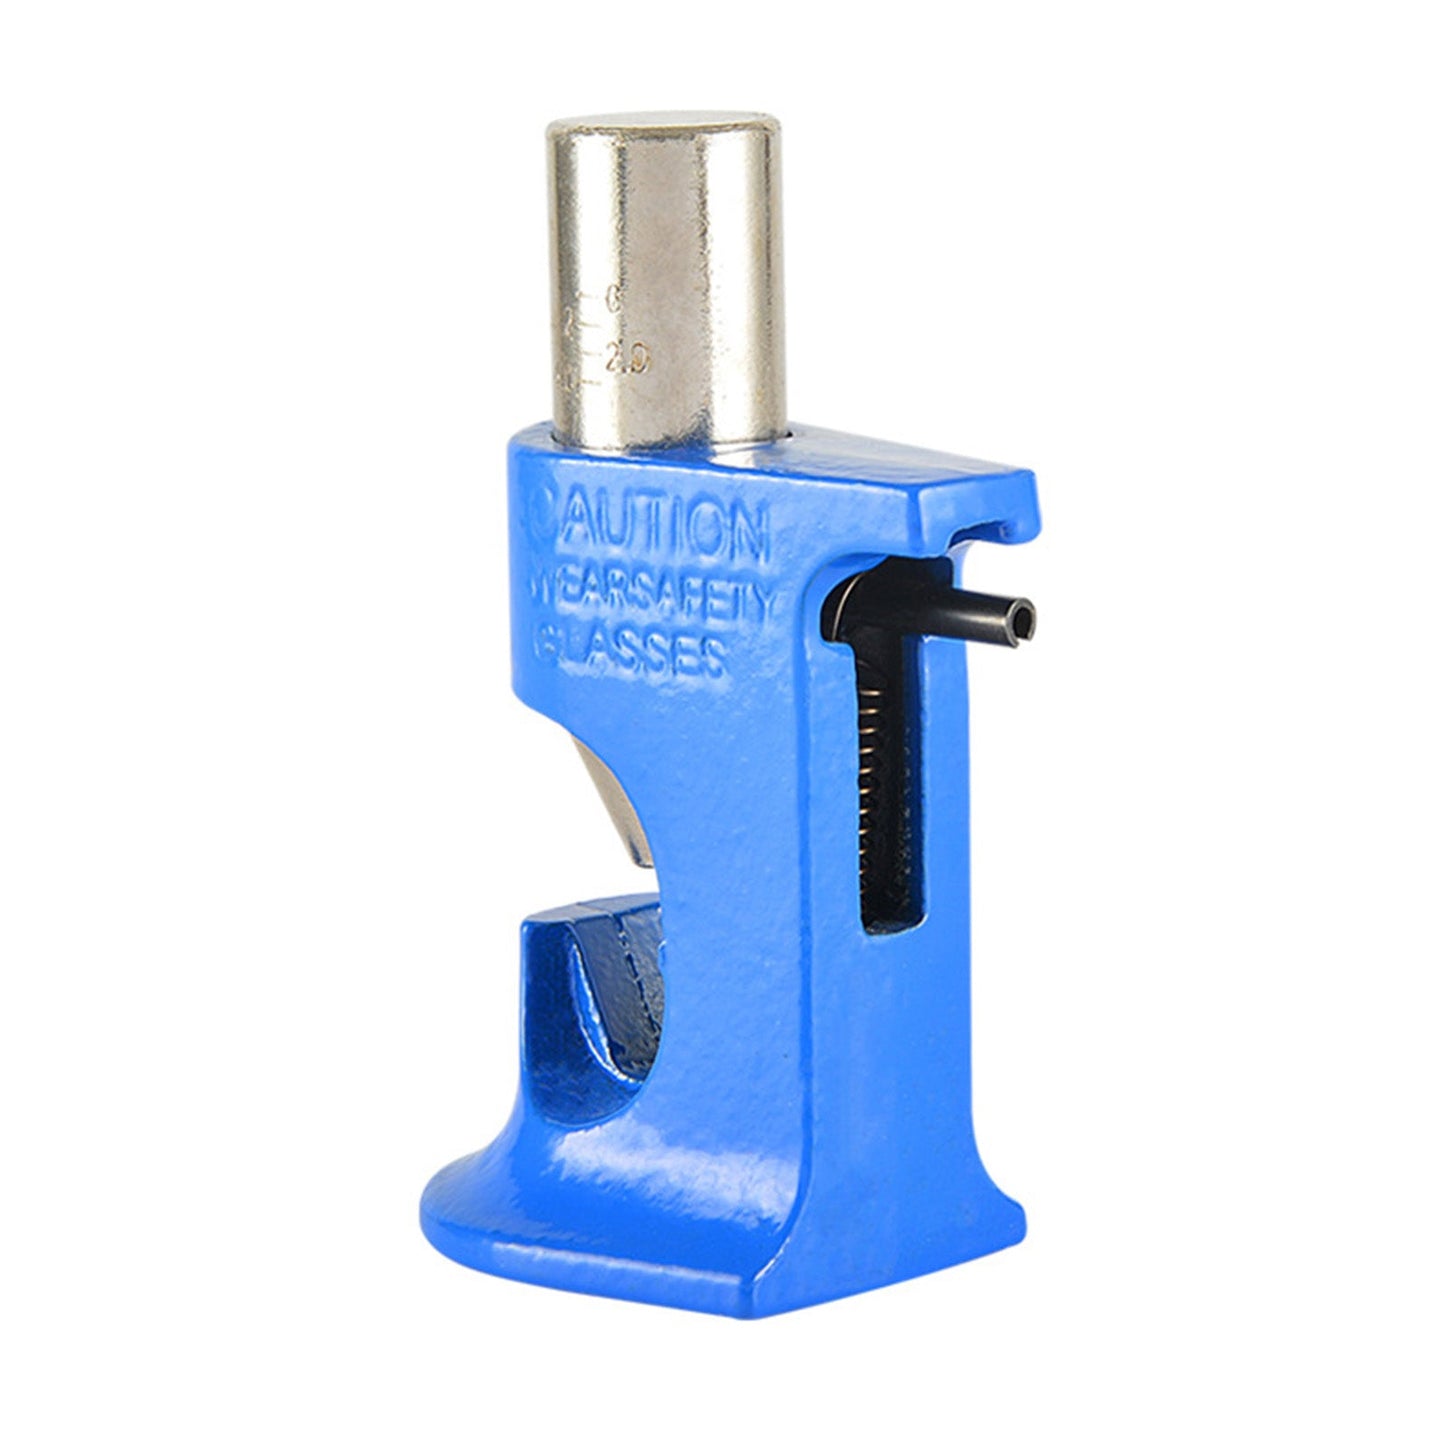 Hammer Crimper Lug Crimper Batteriekabel CRIMPWERKZUG DRAHT 16 AWG - 4/0 AWG